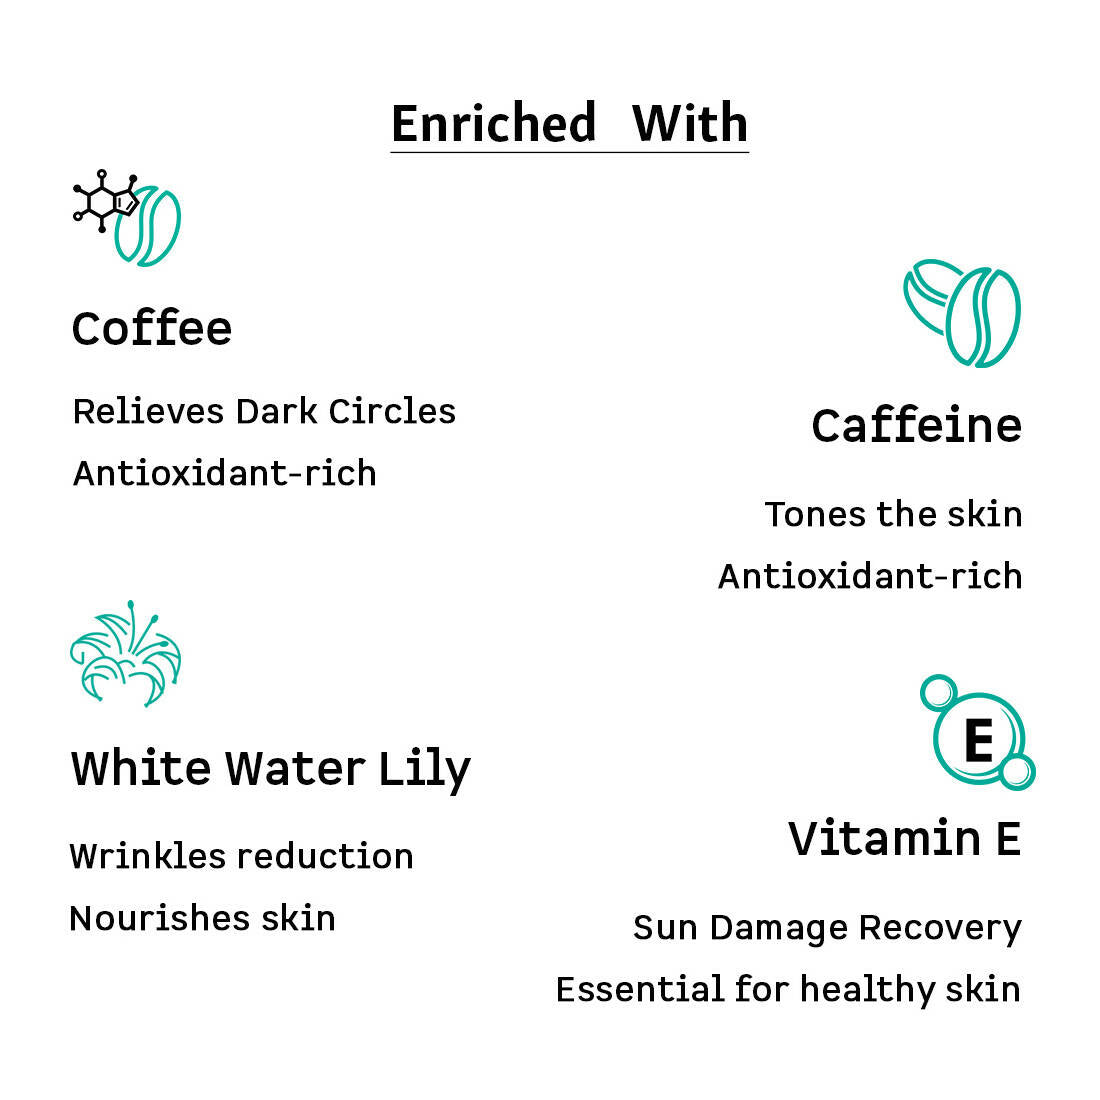 mCaffeine Coffee Under Eye Cream - Distacart